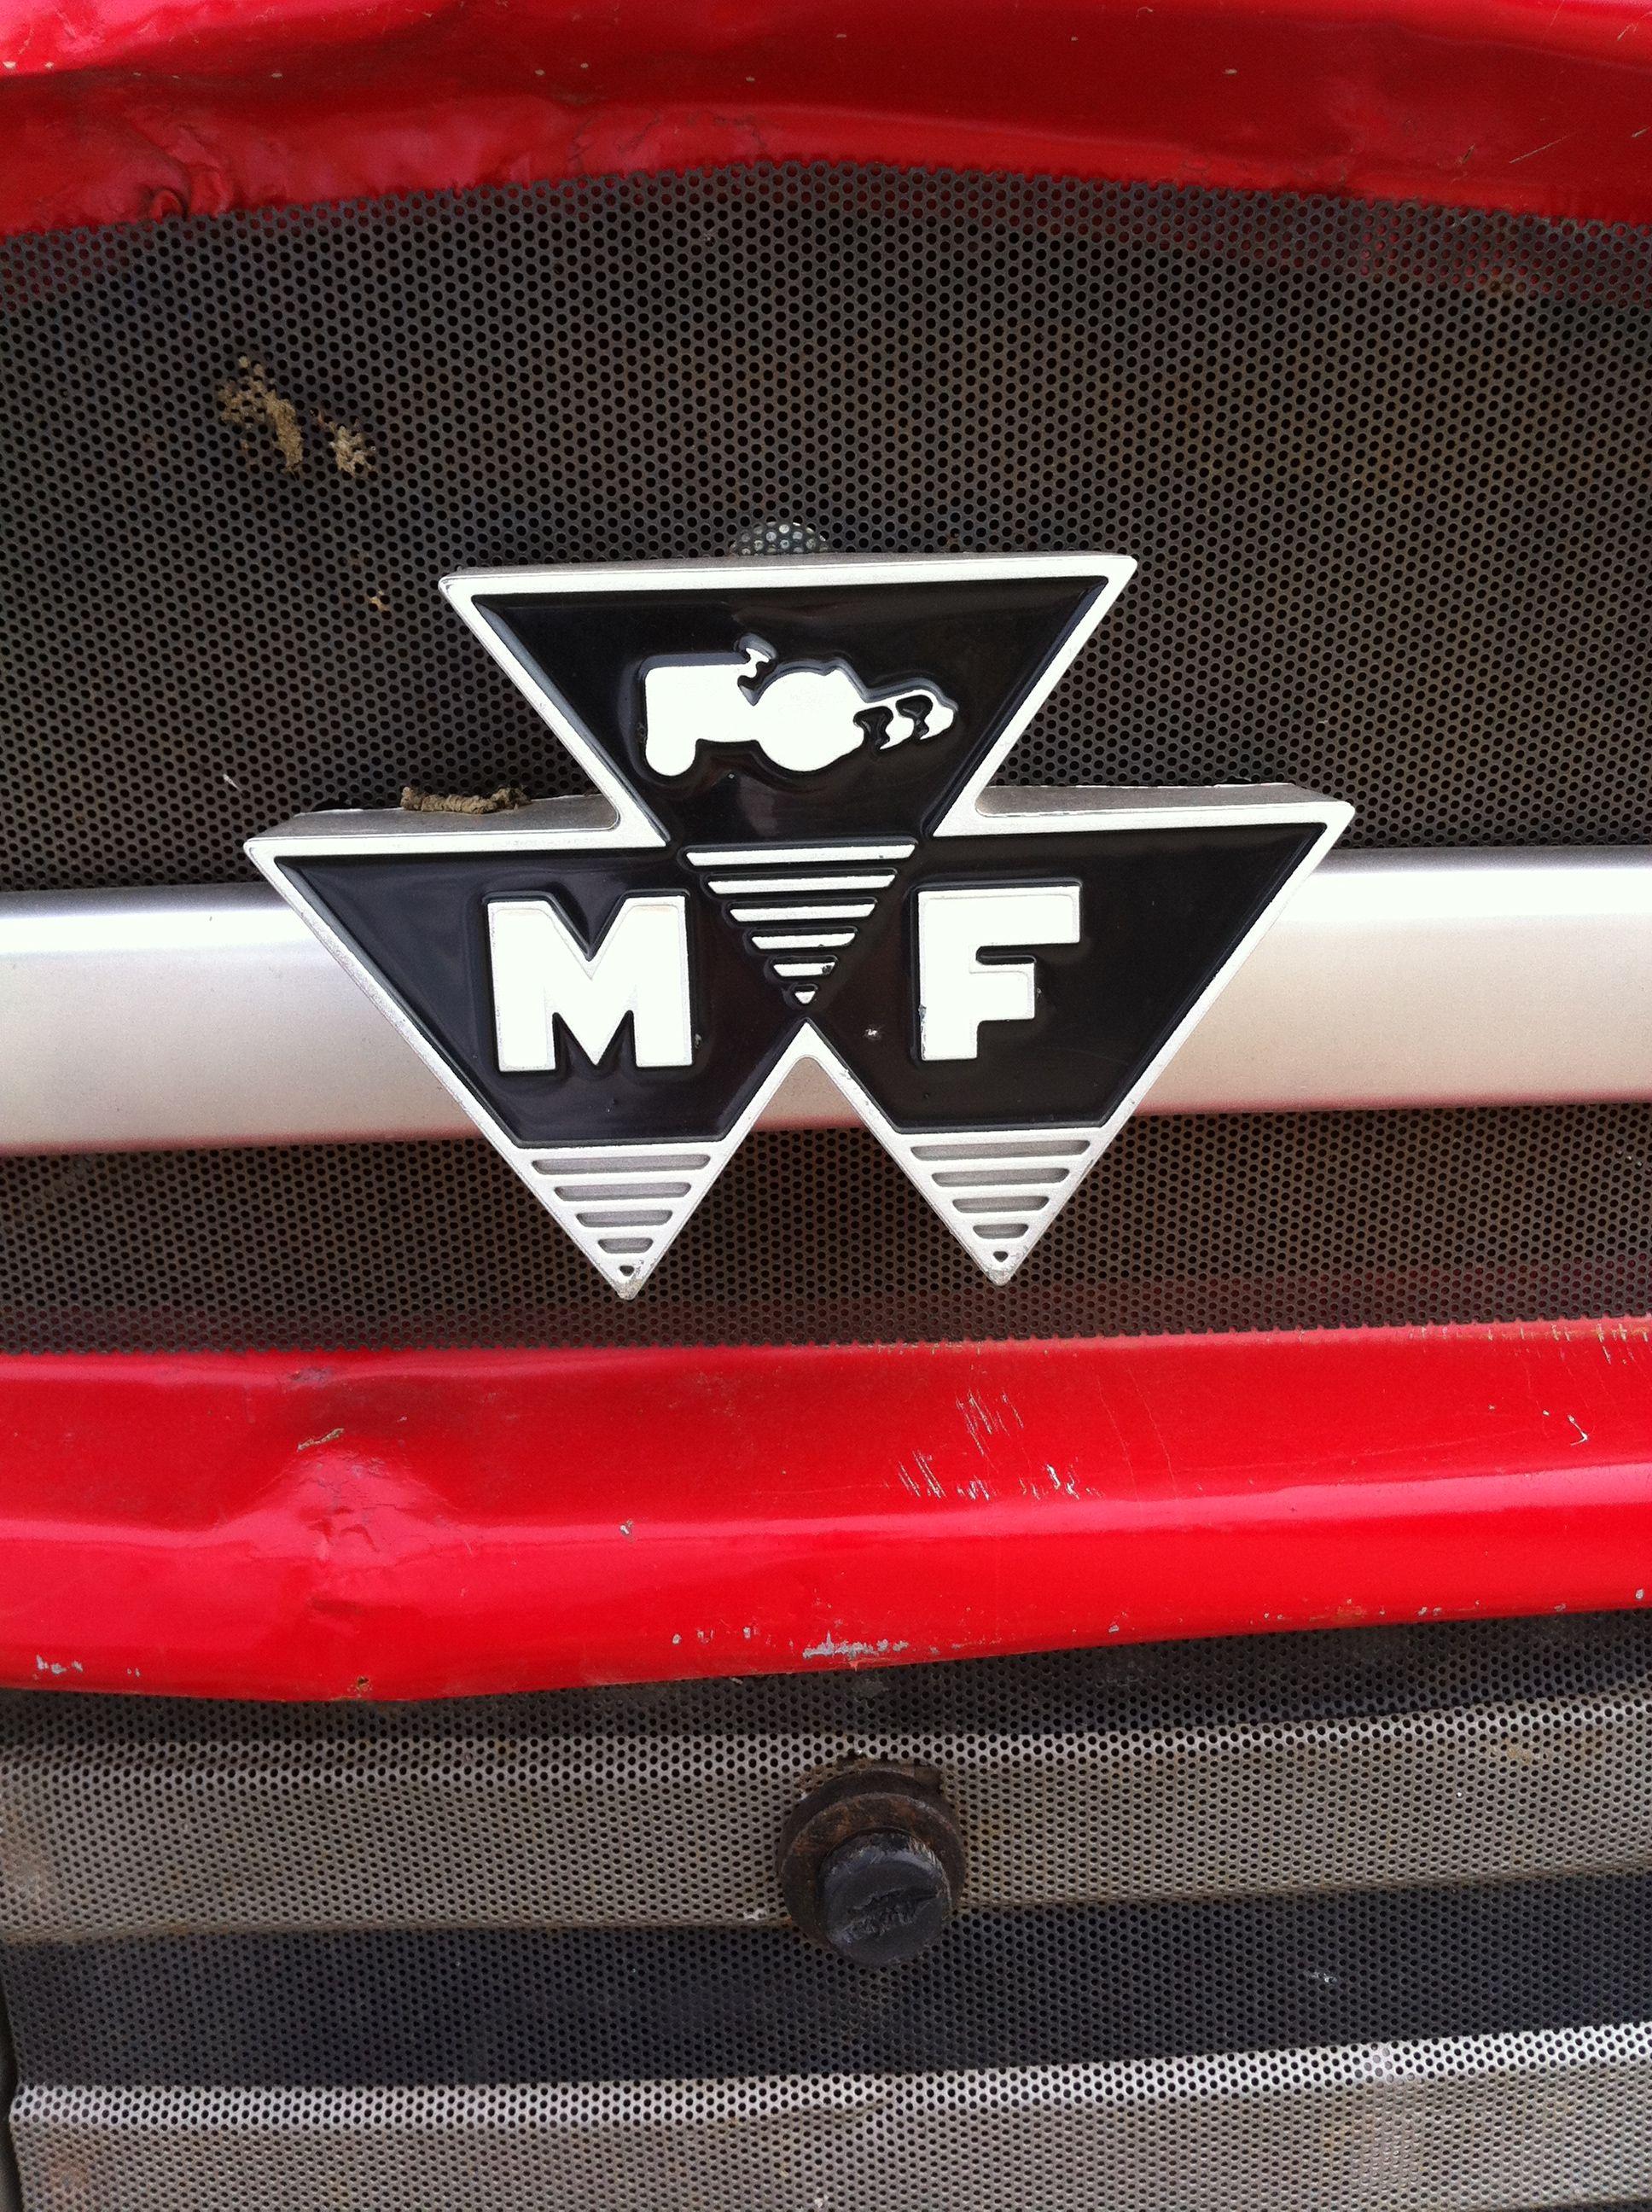 Massey Ferguson Logo - File:Massey Ferguson 165 Front Logo.jpg - Wikimedia Commons